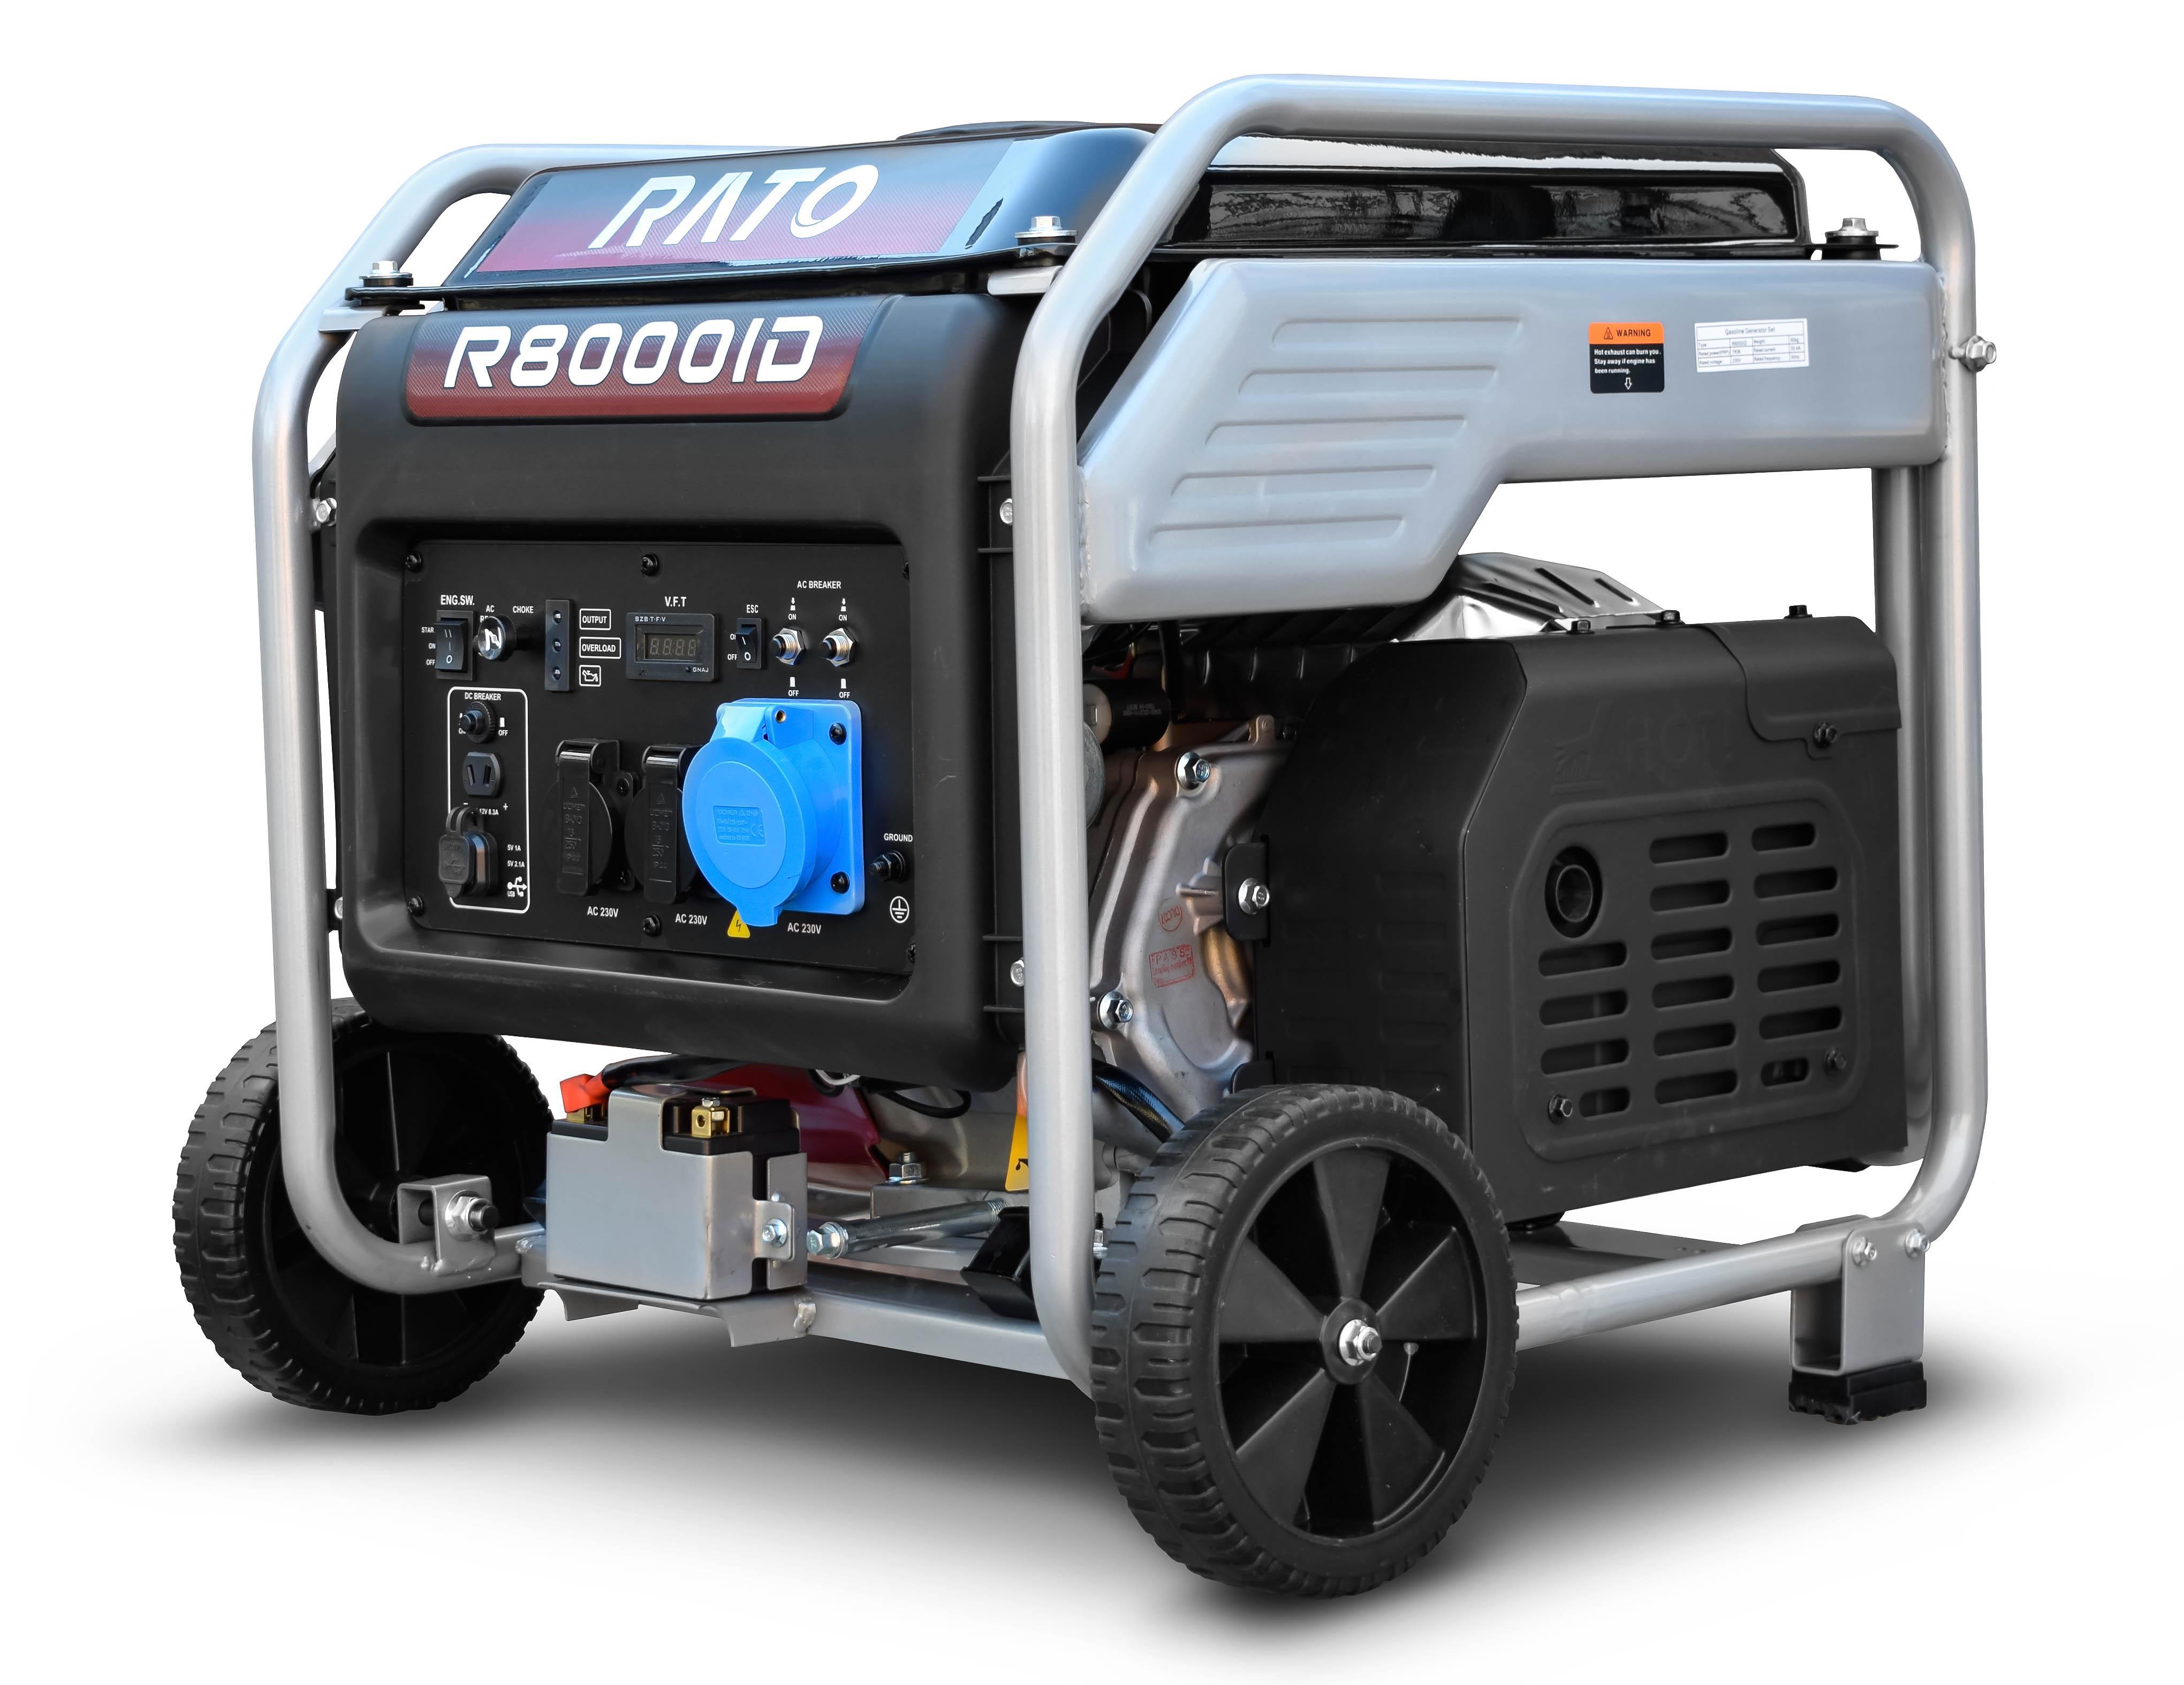  бензиновый Rato инверторный R8000iD, 8 кВт по цене 100320 .